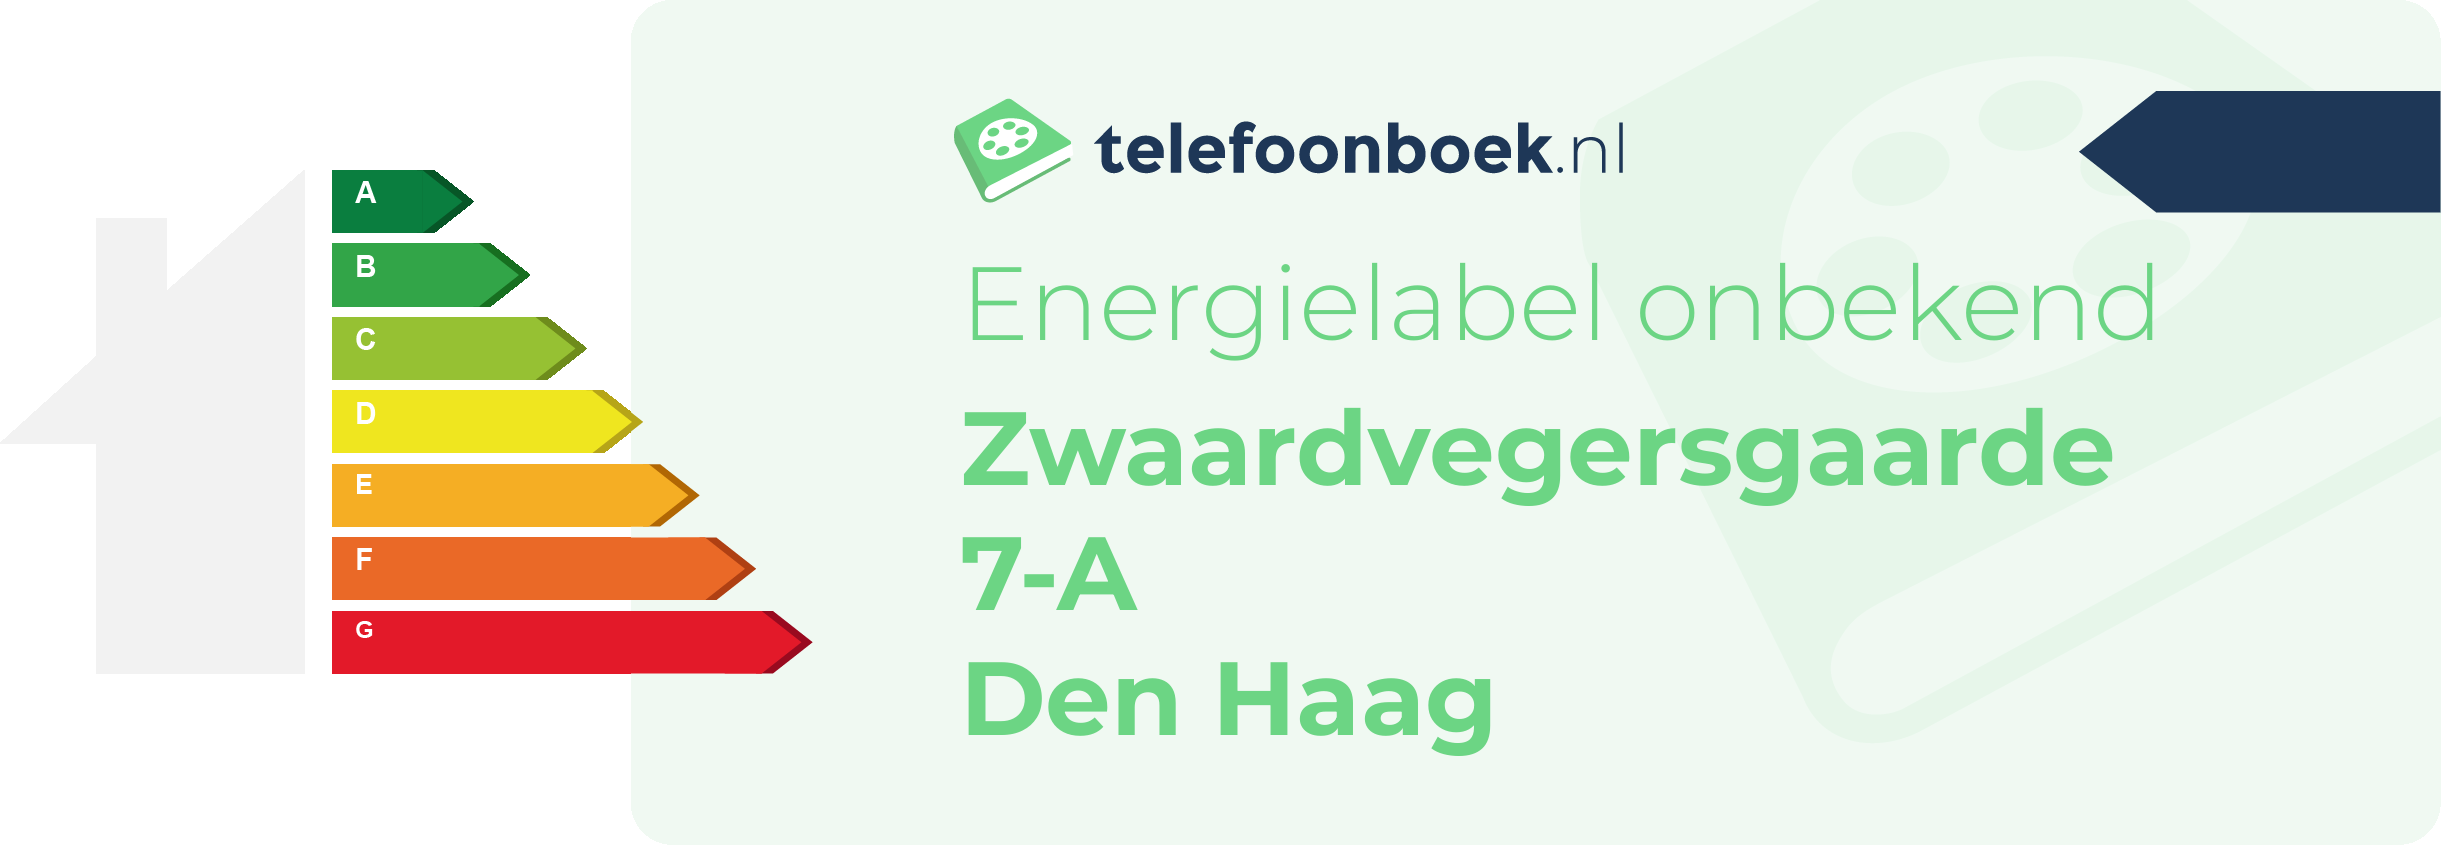 Energielabel Zwaardvegersgaarde 7-A Den Haag